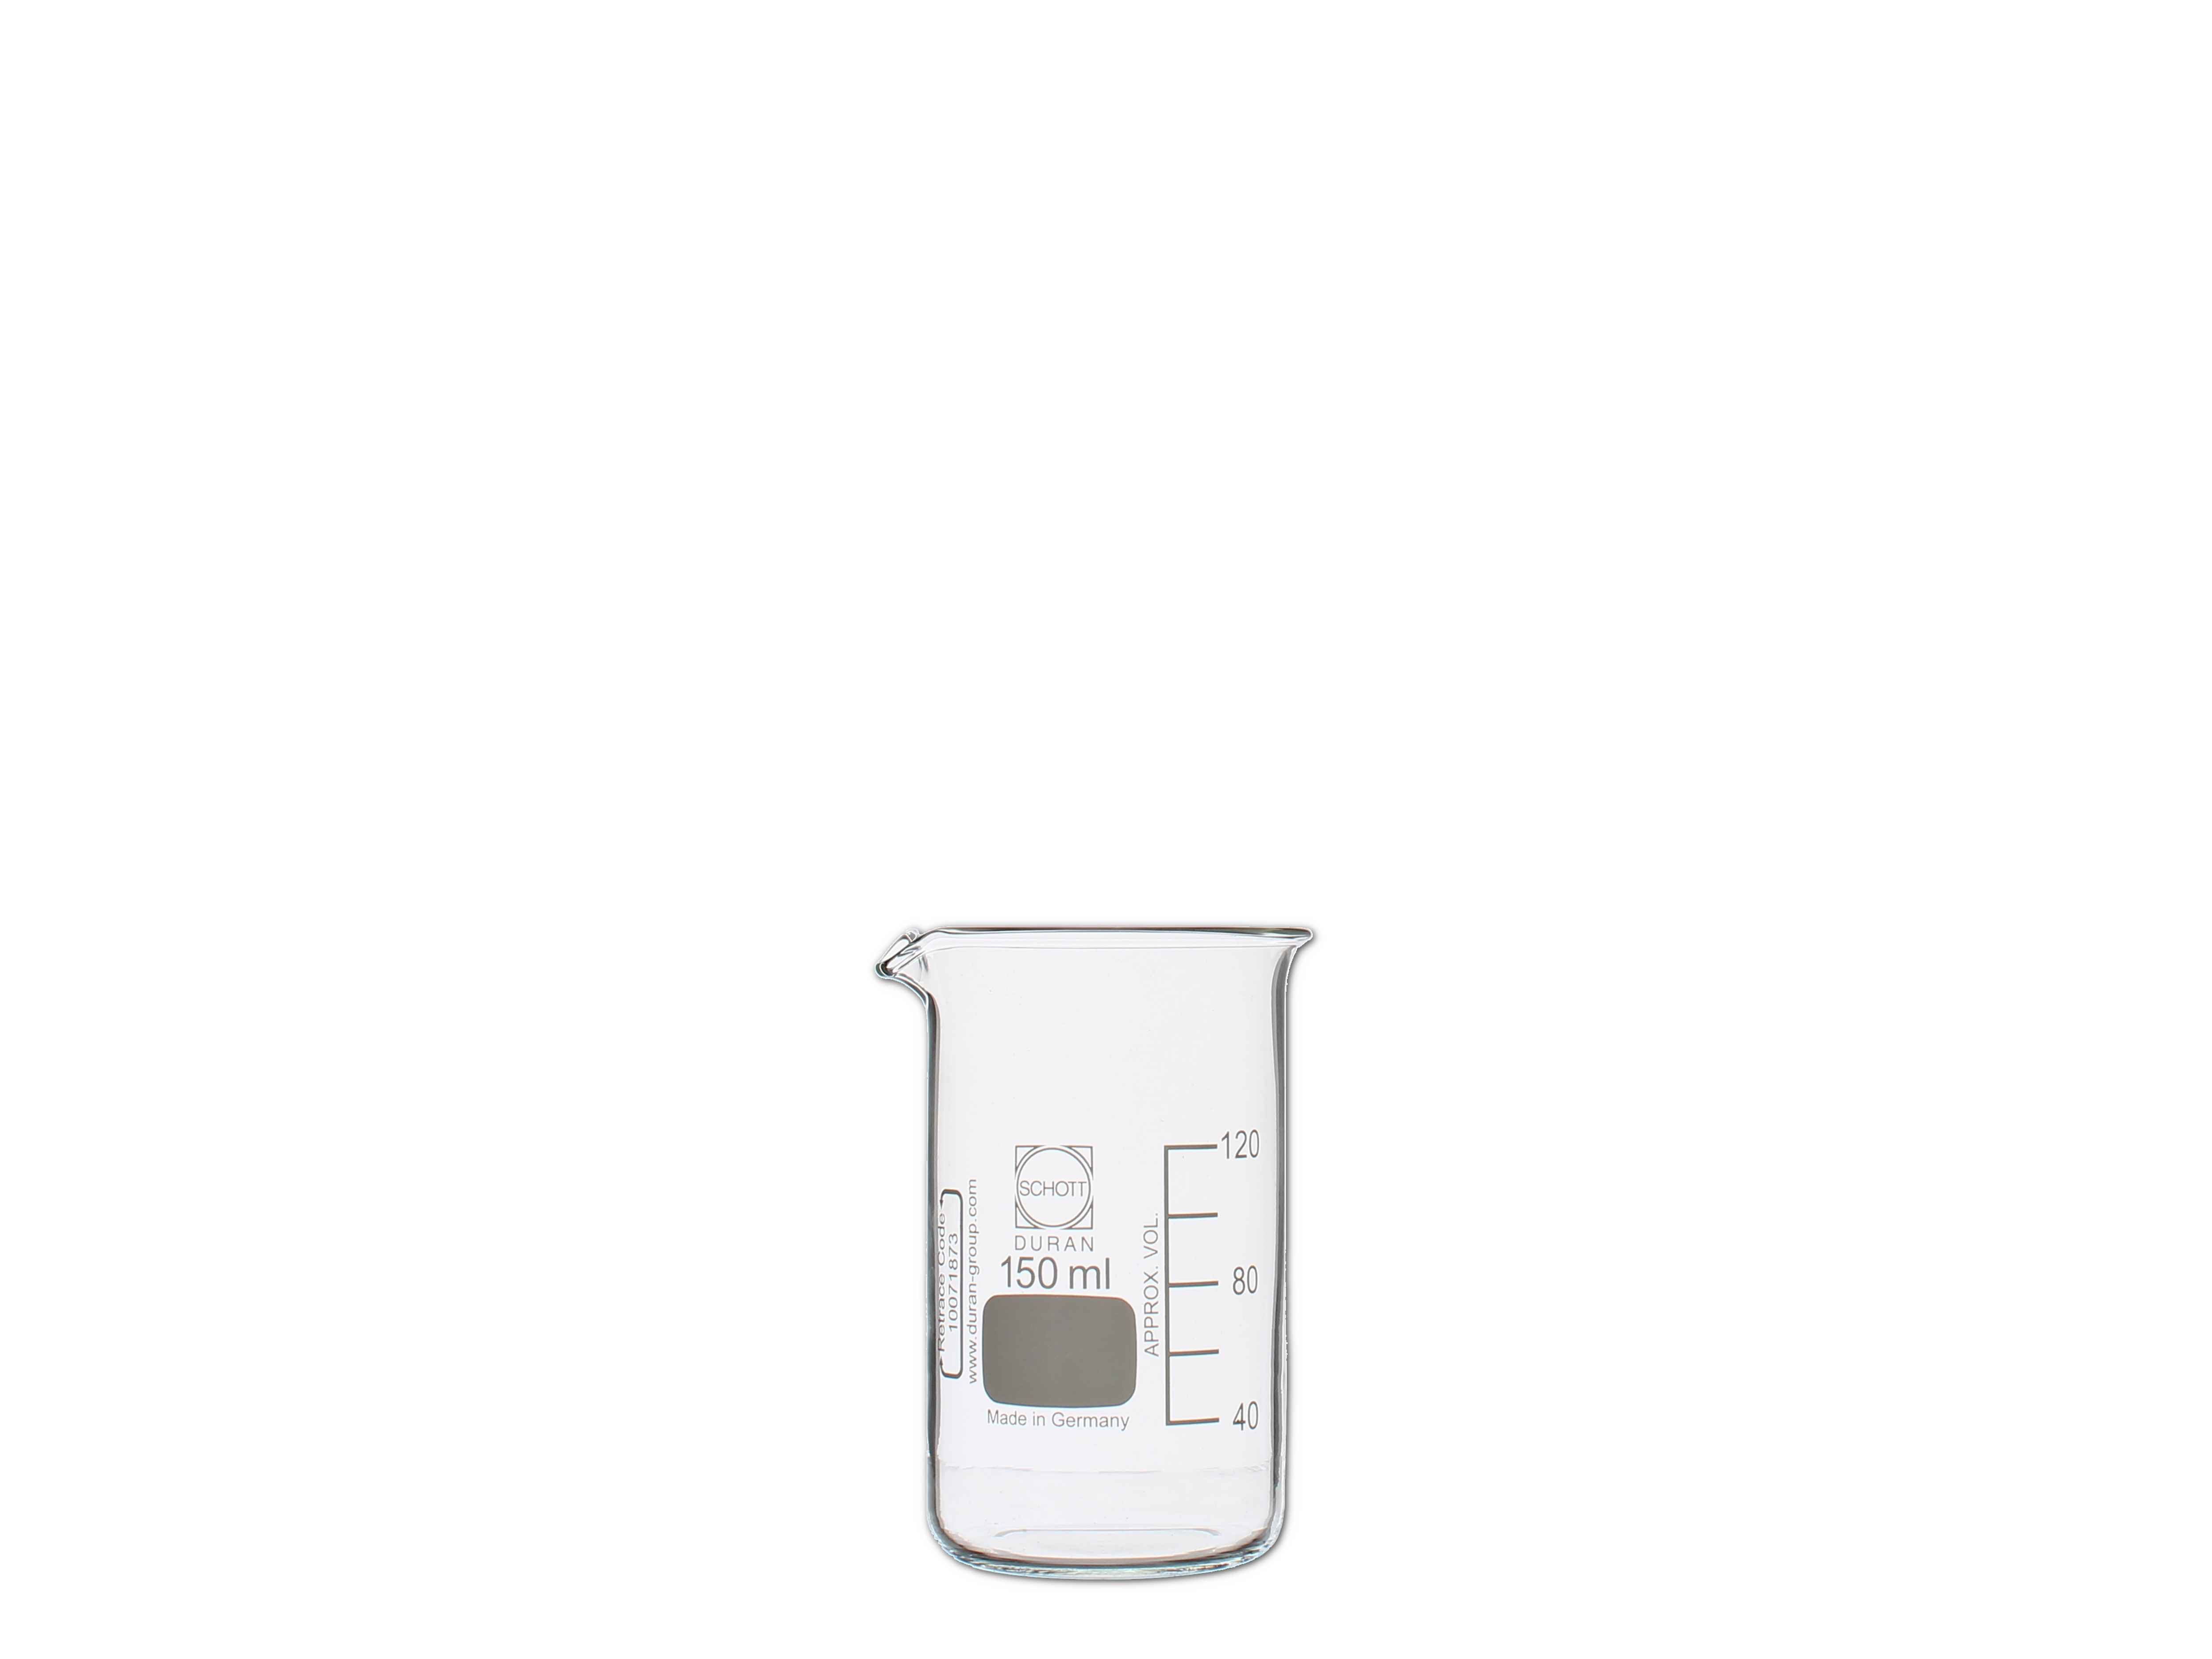    Becherglas, graduiert - hohe Form - 150 ml